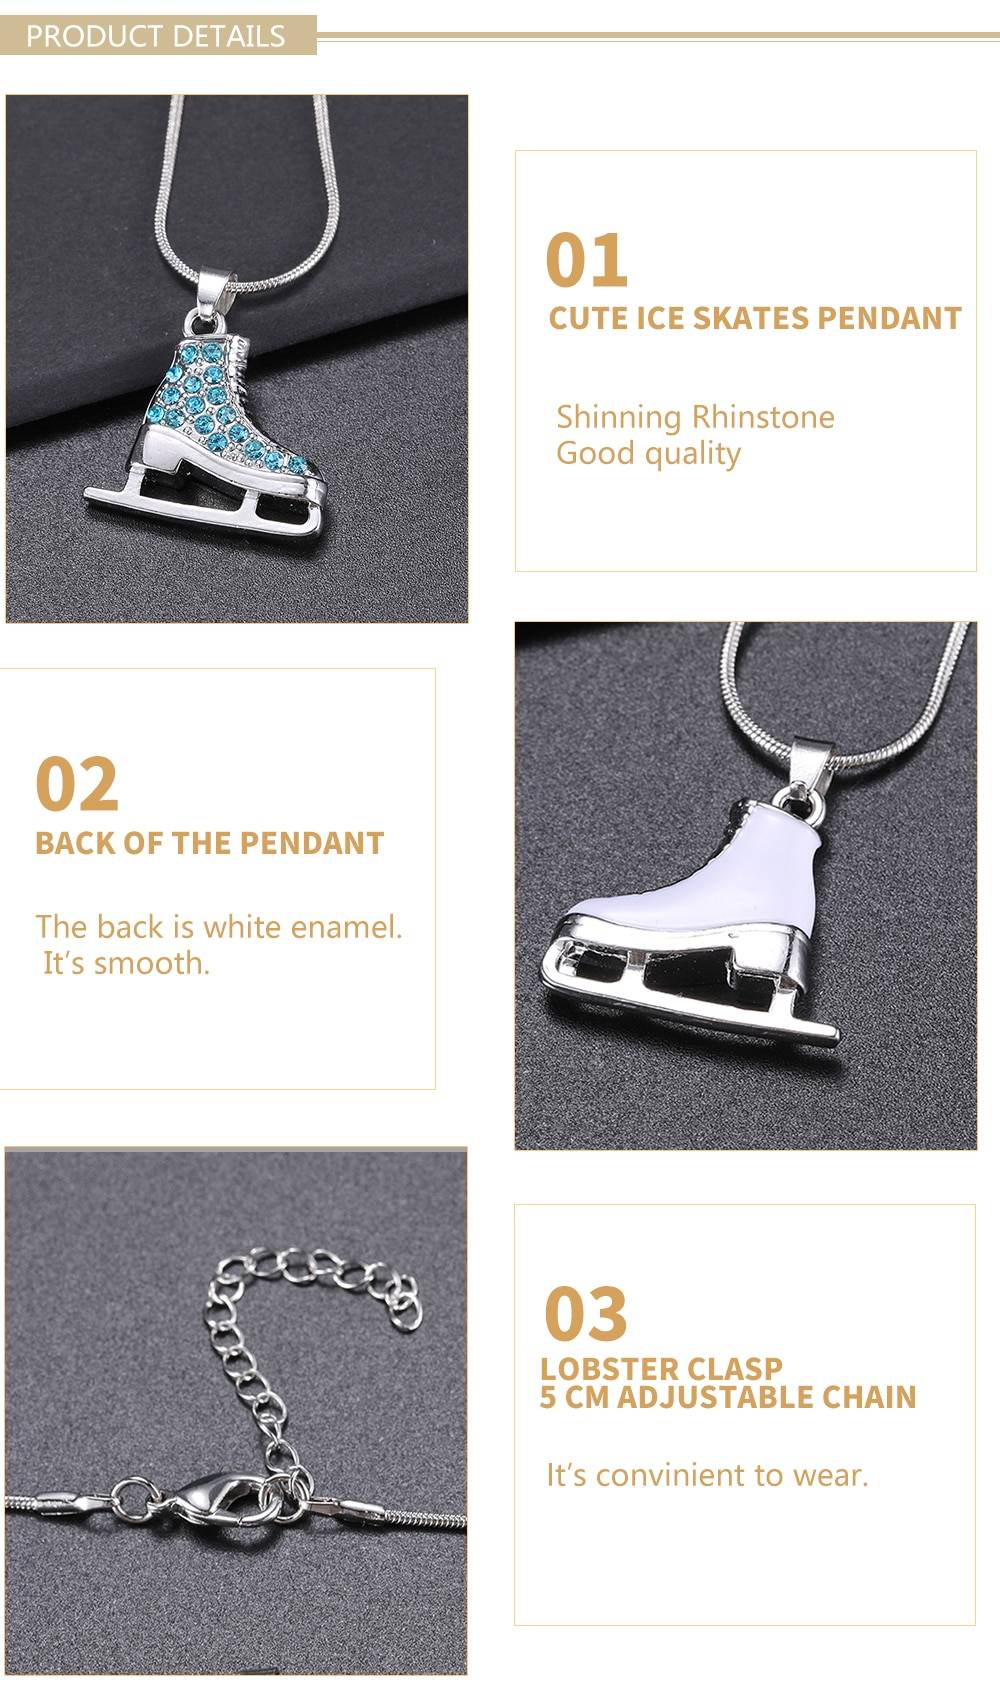 Skyrim 3D cristal patin à glace patinage artistique pendentif patineur collier couleur argent longs colliers bijoux pour adolescents fille femmes cadeau